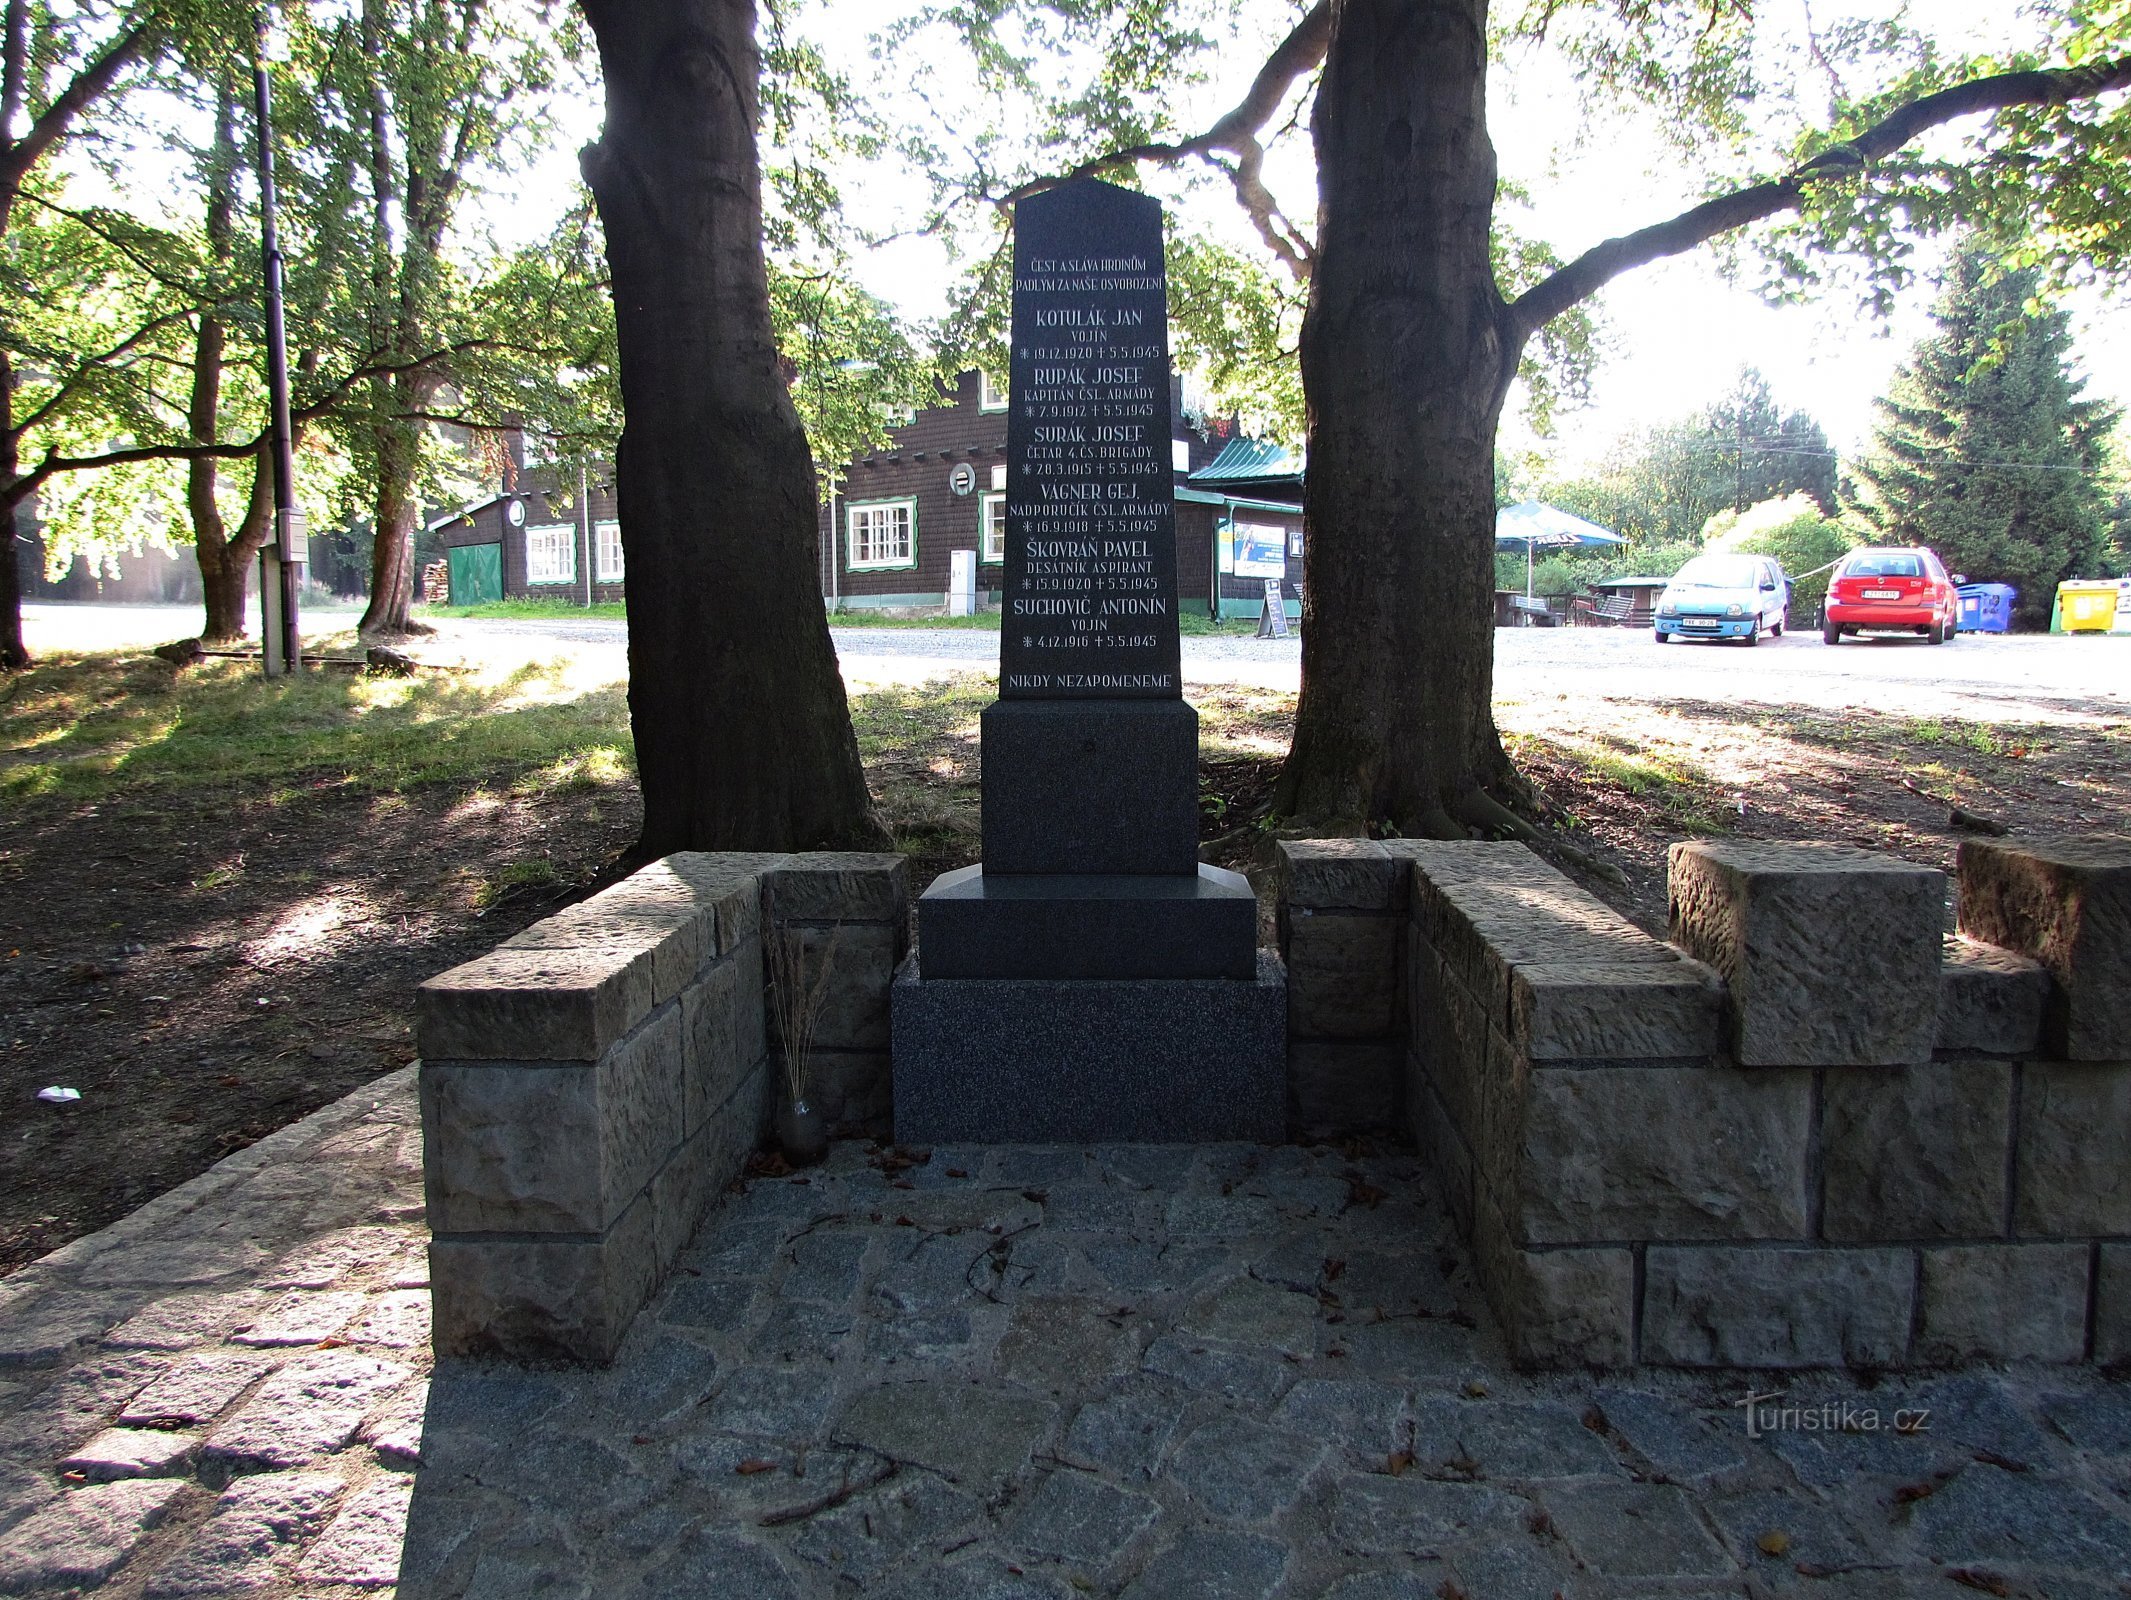 Đài tưởng niệm những người đã ngã xuống